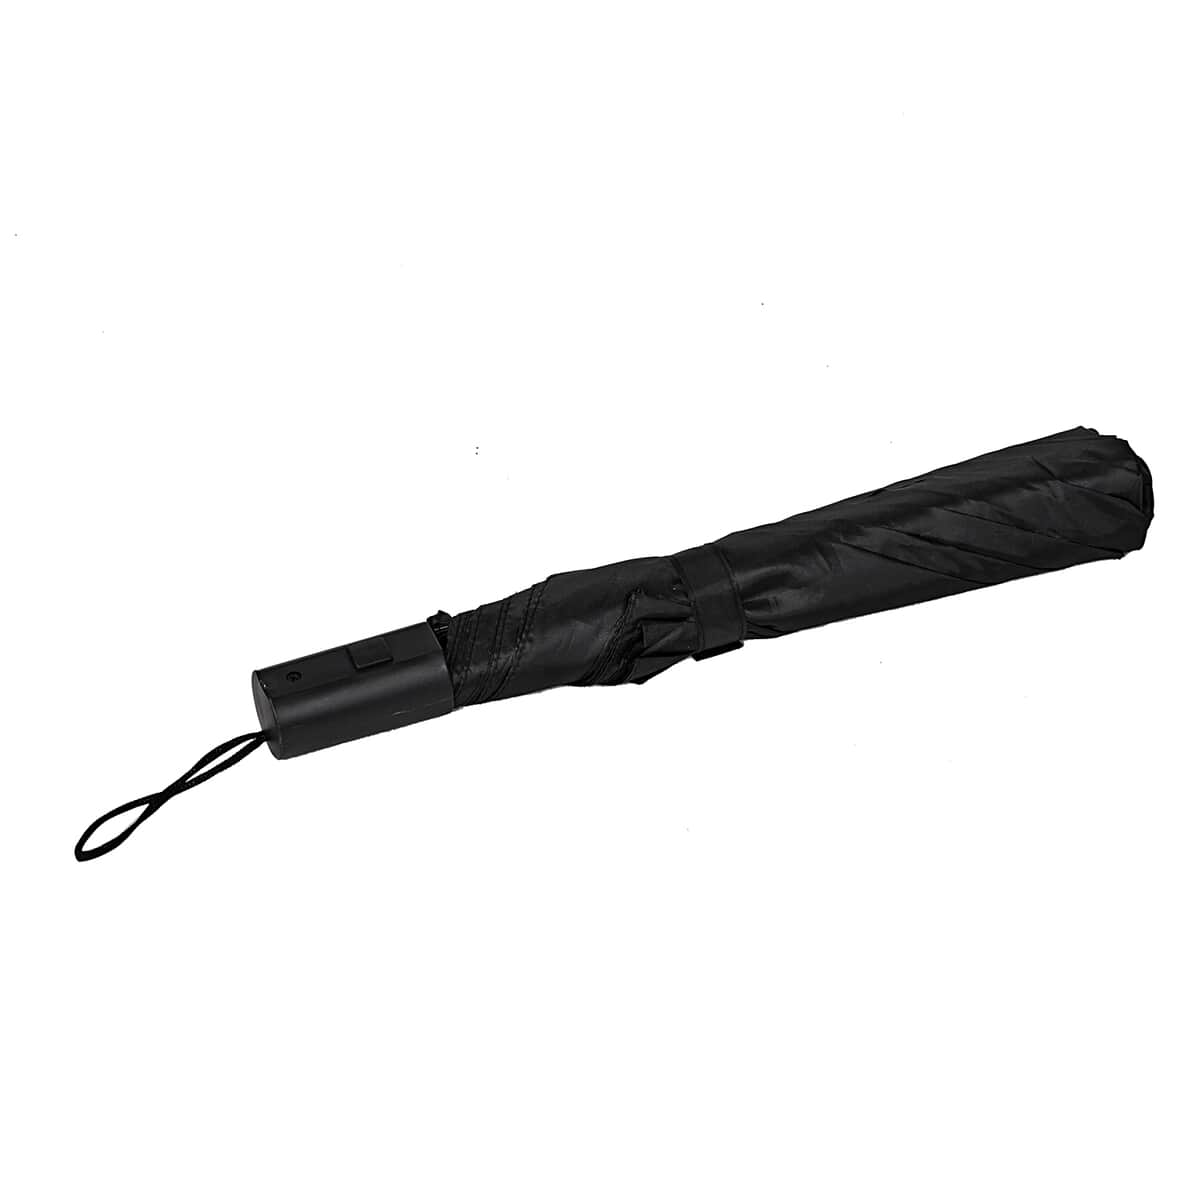 42 Inches Auto Folding Umbrella -Black image number 5